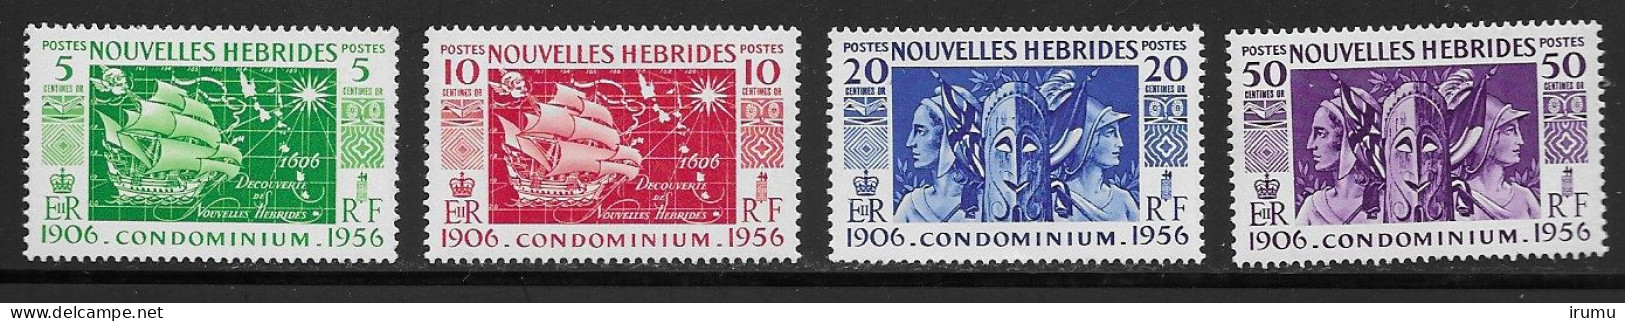 Nlle Hébrides 1956 Série Complète * (Y&T 167-170) Vc 8.5 EUR (SN 2103) - Ongebruikt